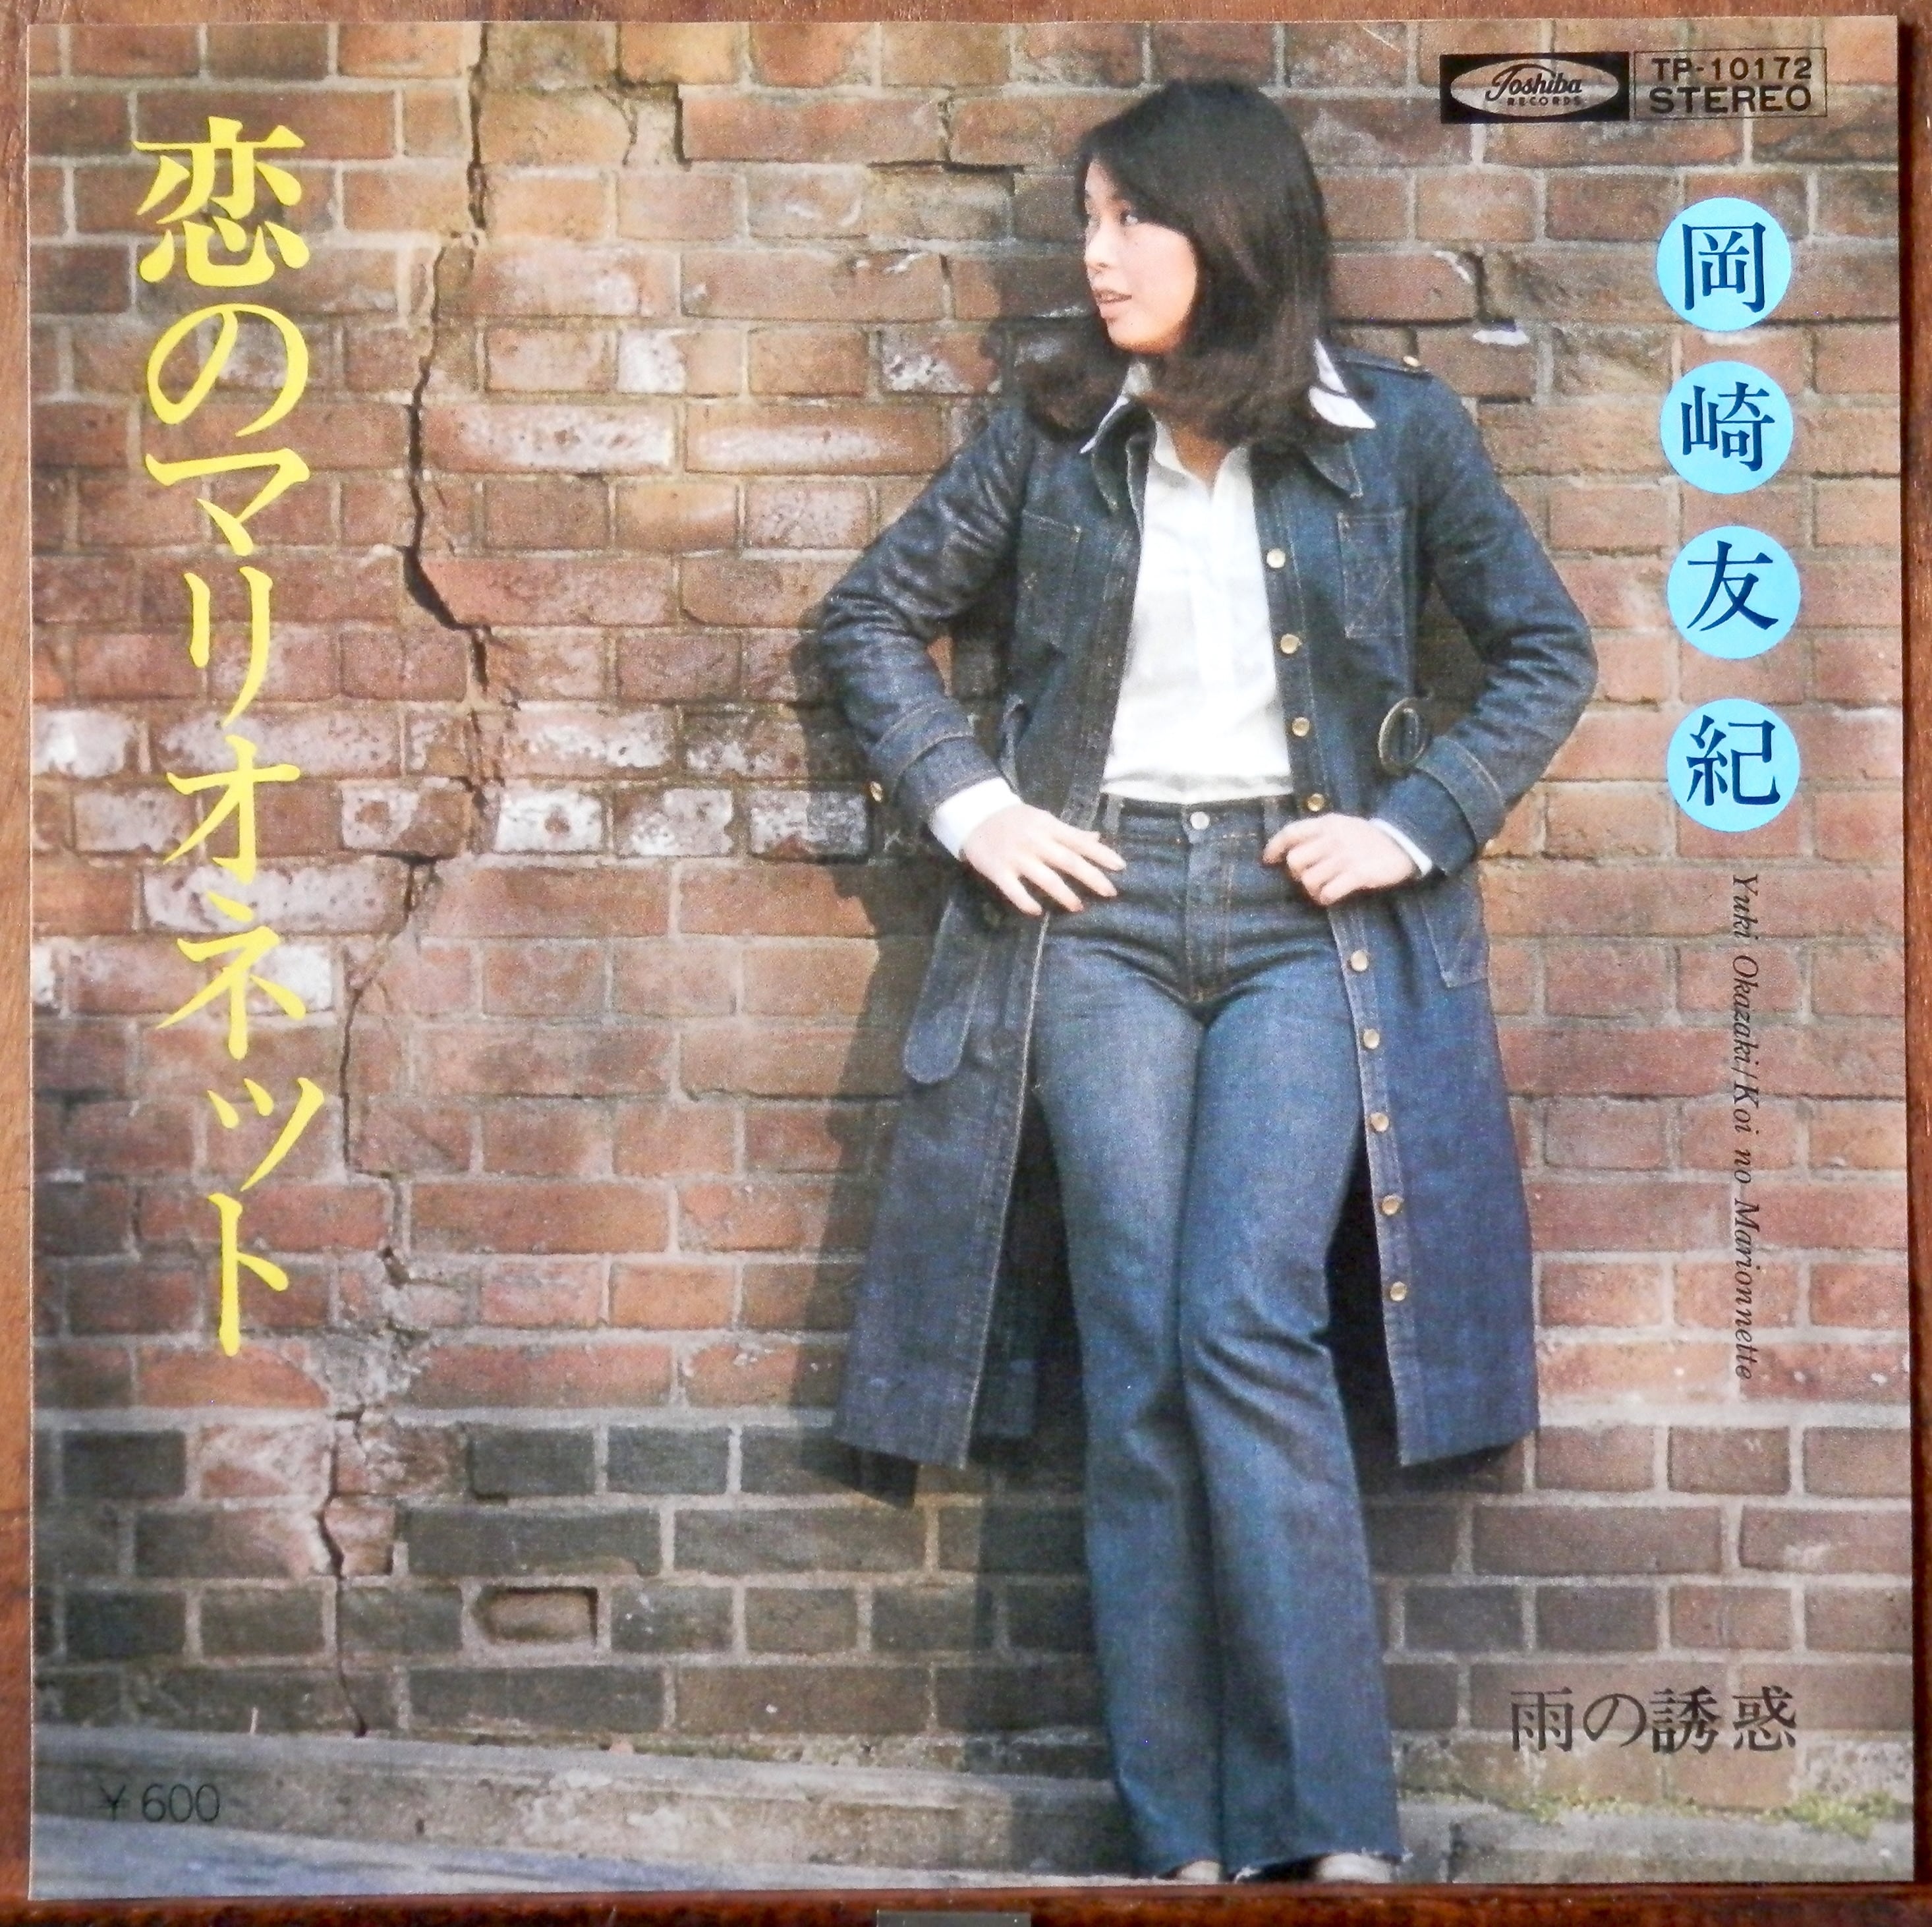 77【EP】岡崎友紀 恋のマリオネット 音盤窟レコード